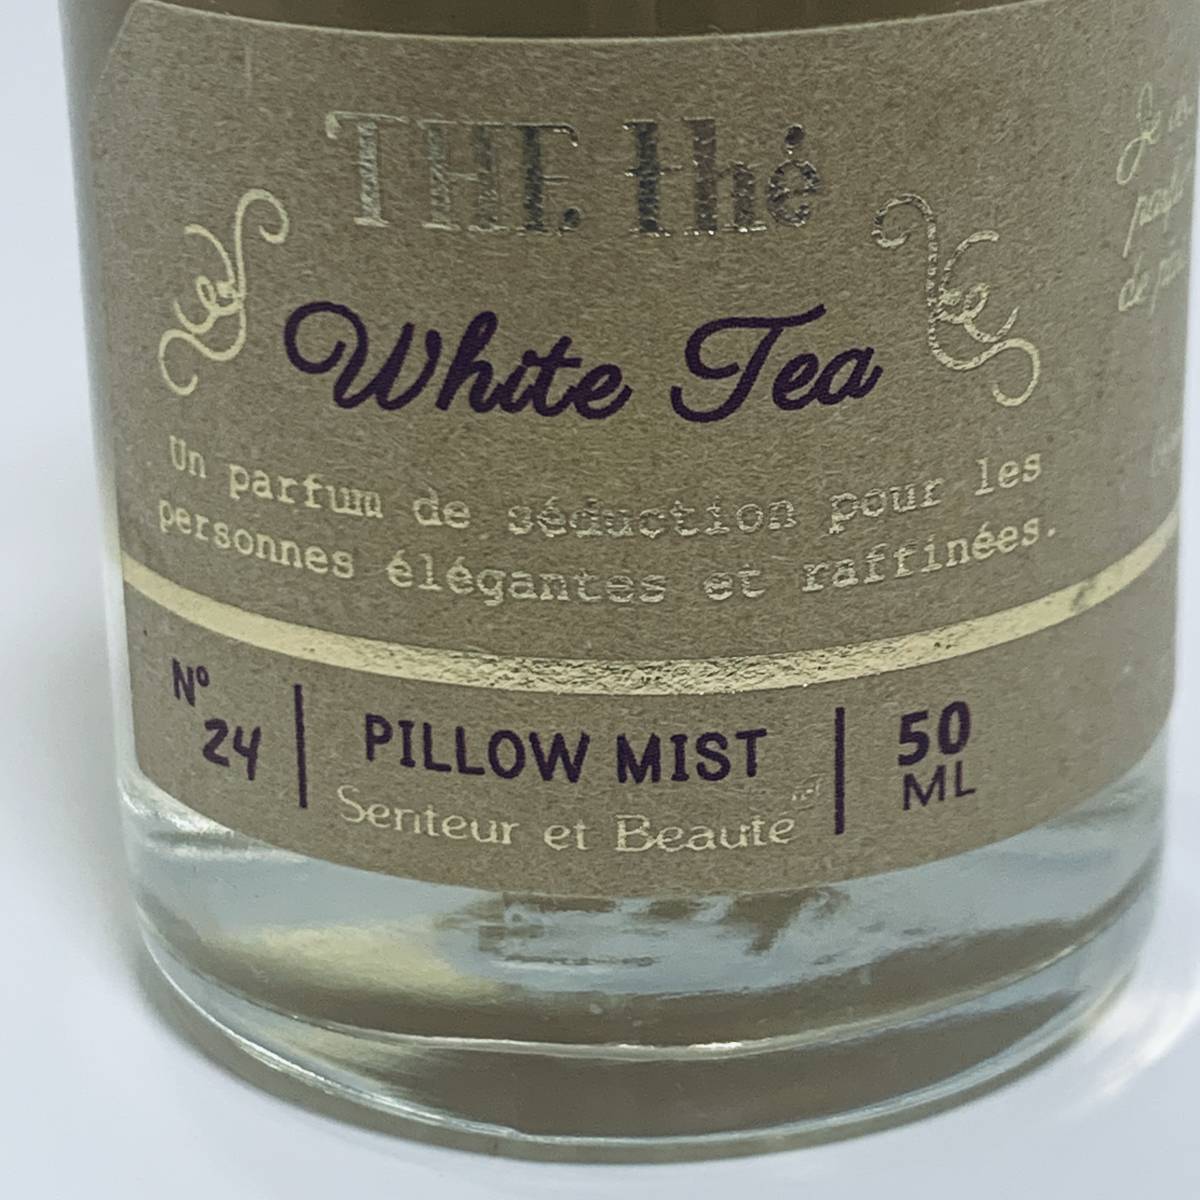 K0587 солнечный tar e Beaute pillow Mist белый чай 50ml осталось количество возможно 90%